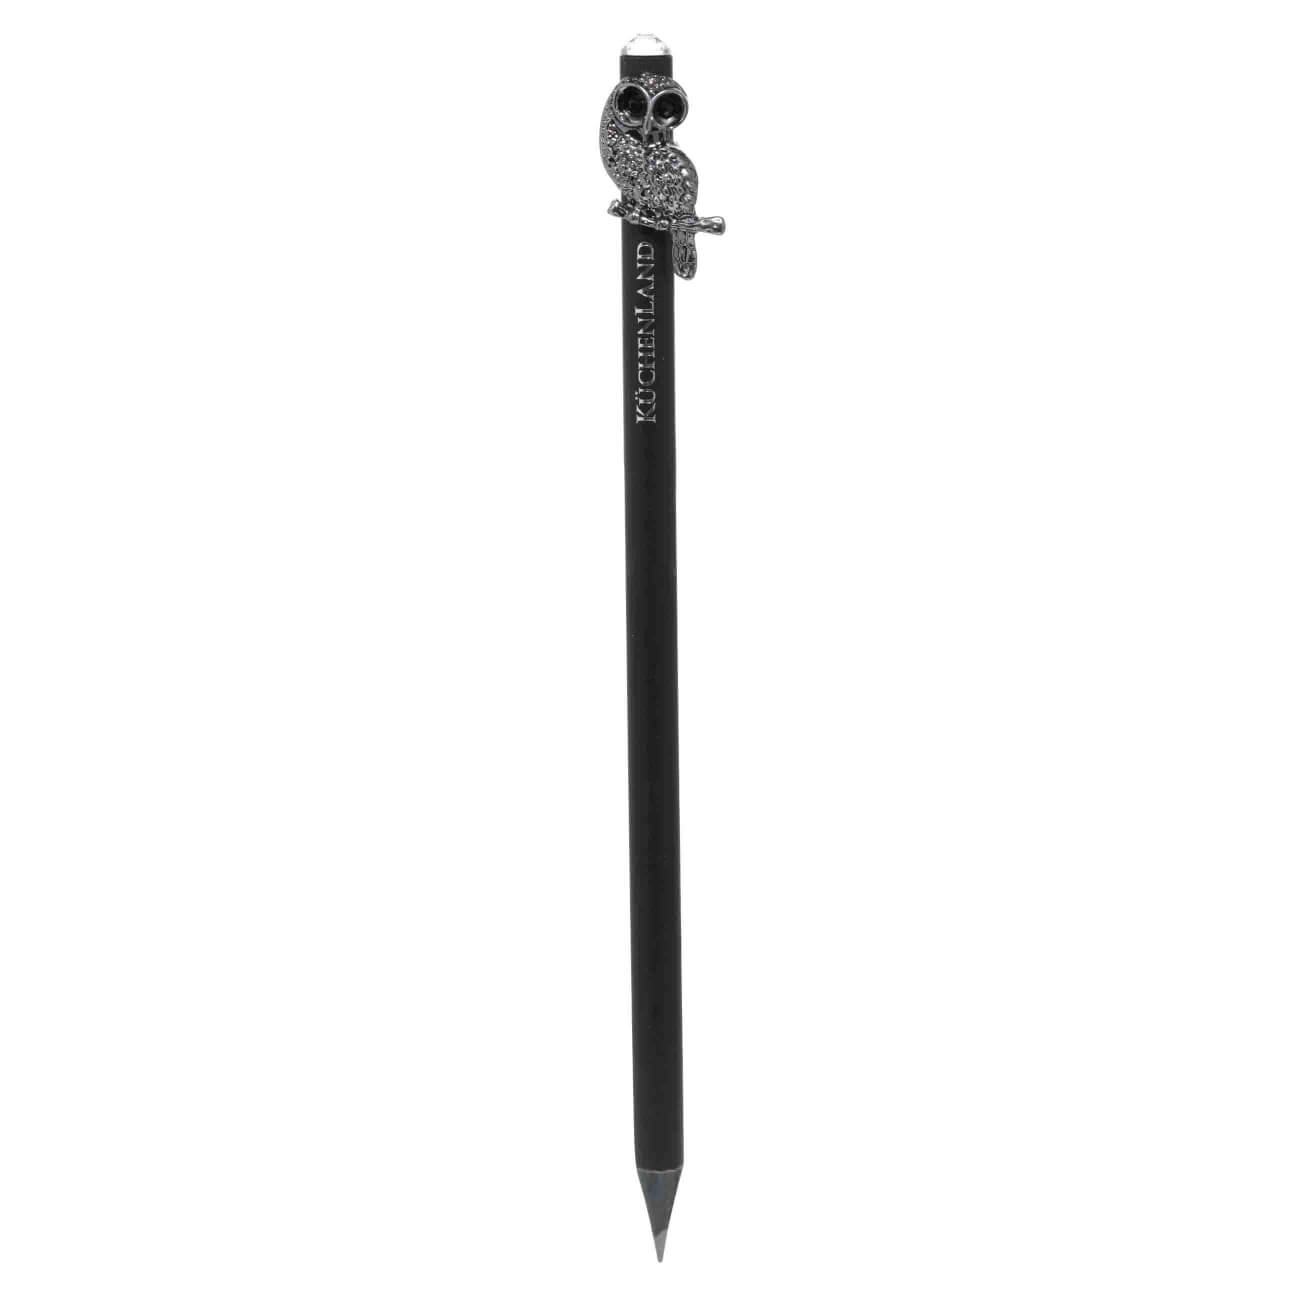 Карандаш, 18 см, чернографитный, с фигуркой, черный, Сова, Draw figure карандаш чернографитный красин конструктор 7м 7b шестигран заточен